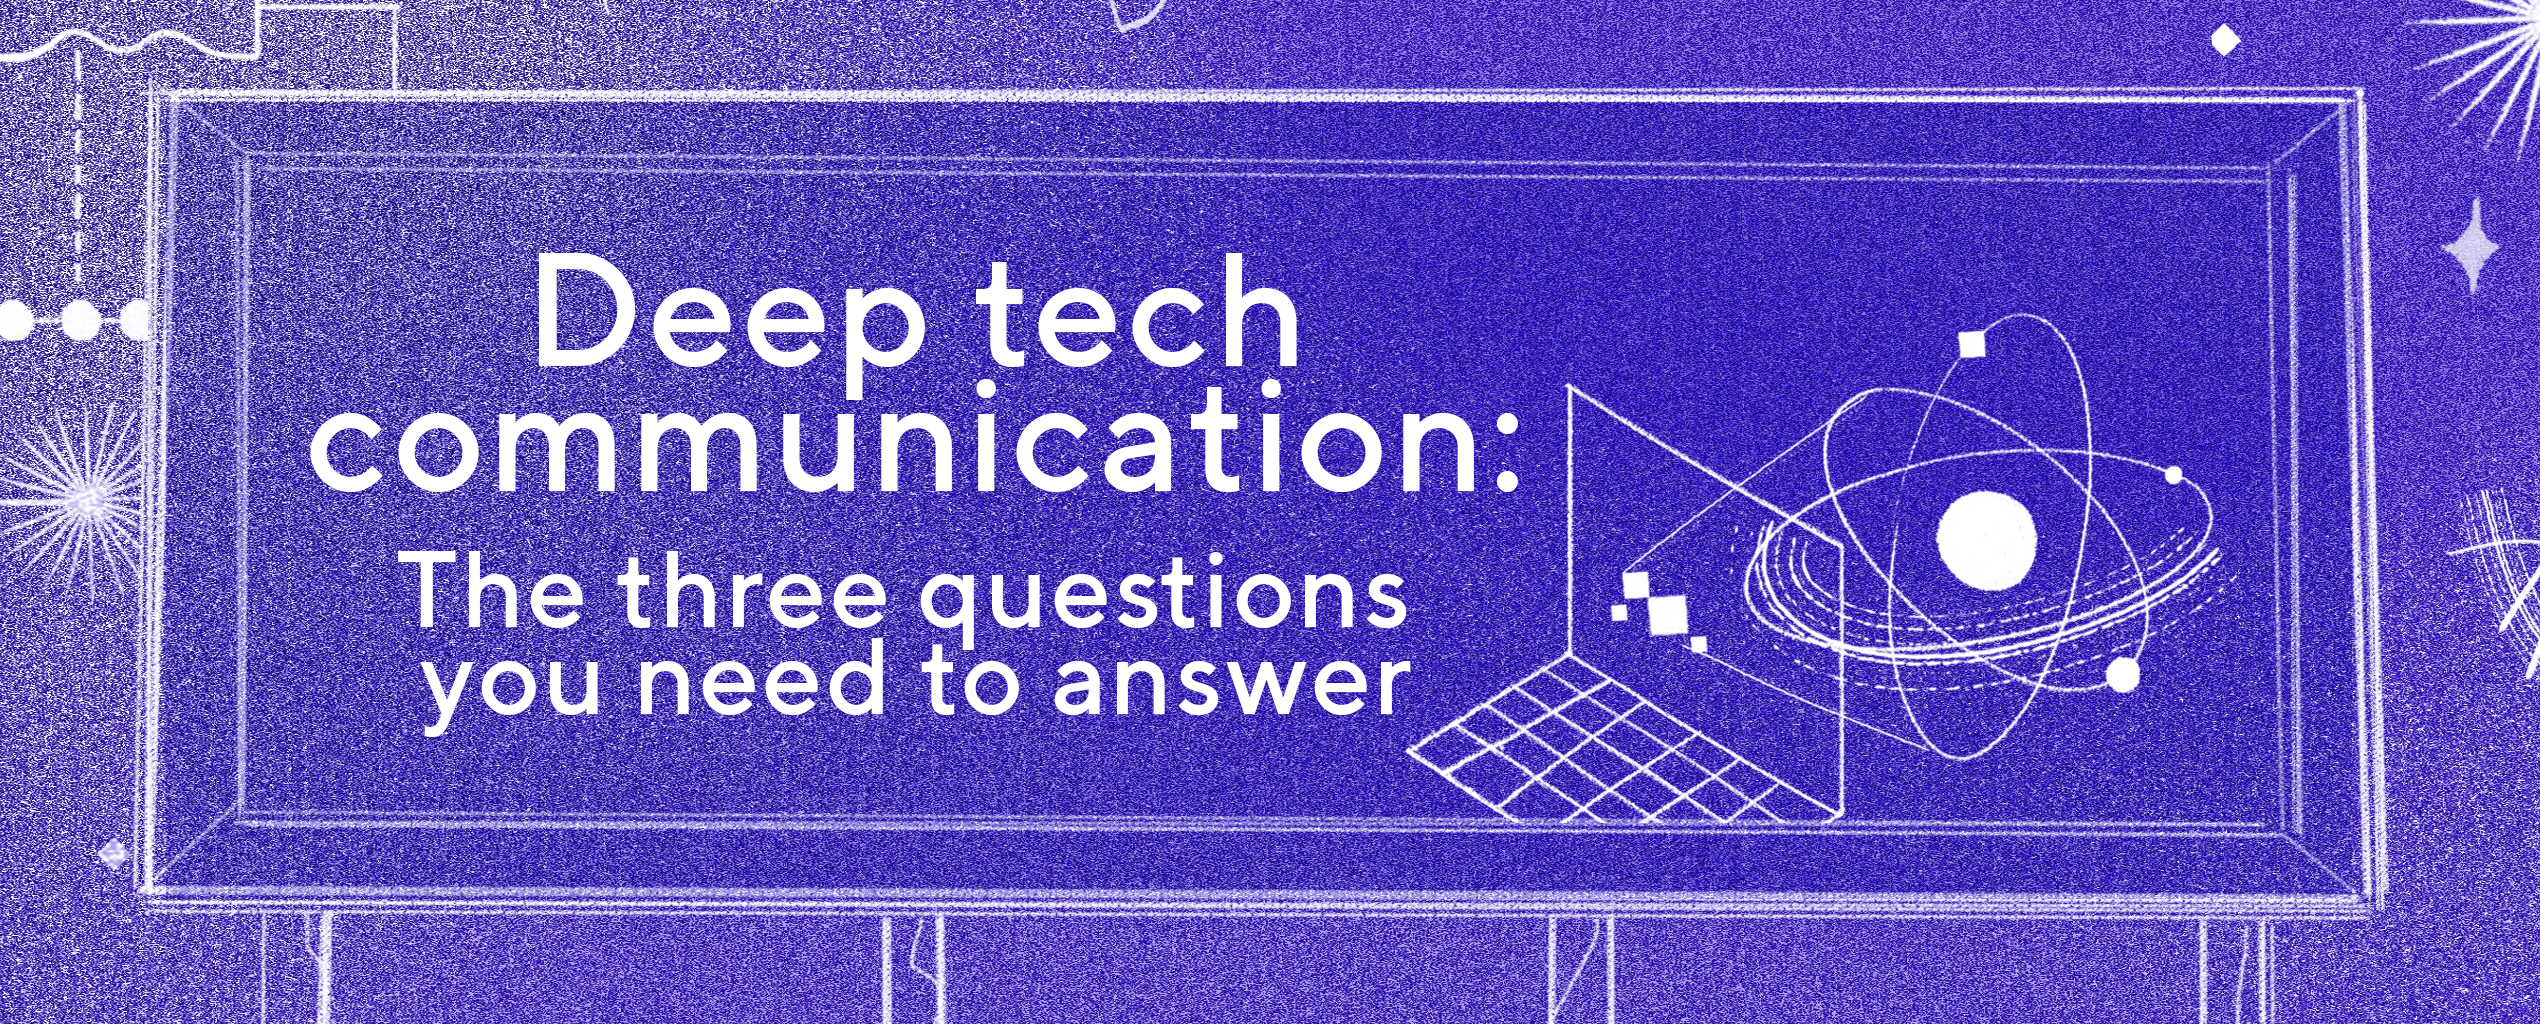 Diepe technologie communicatie: de drie vragen die je moet beantwoorden